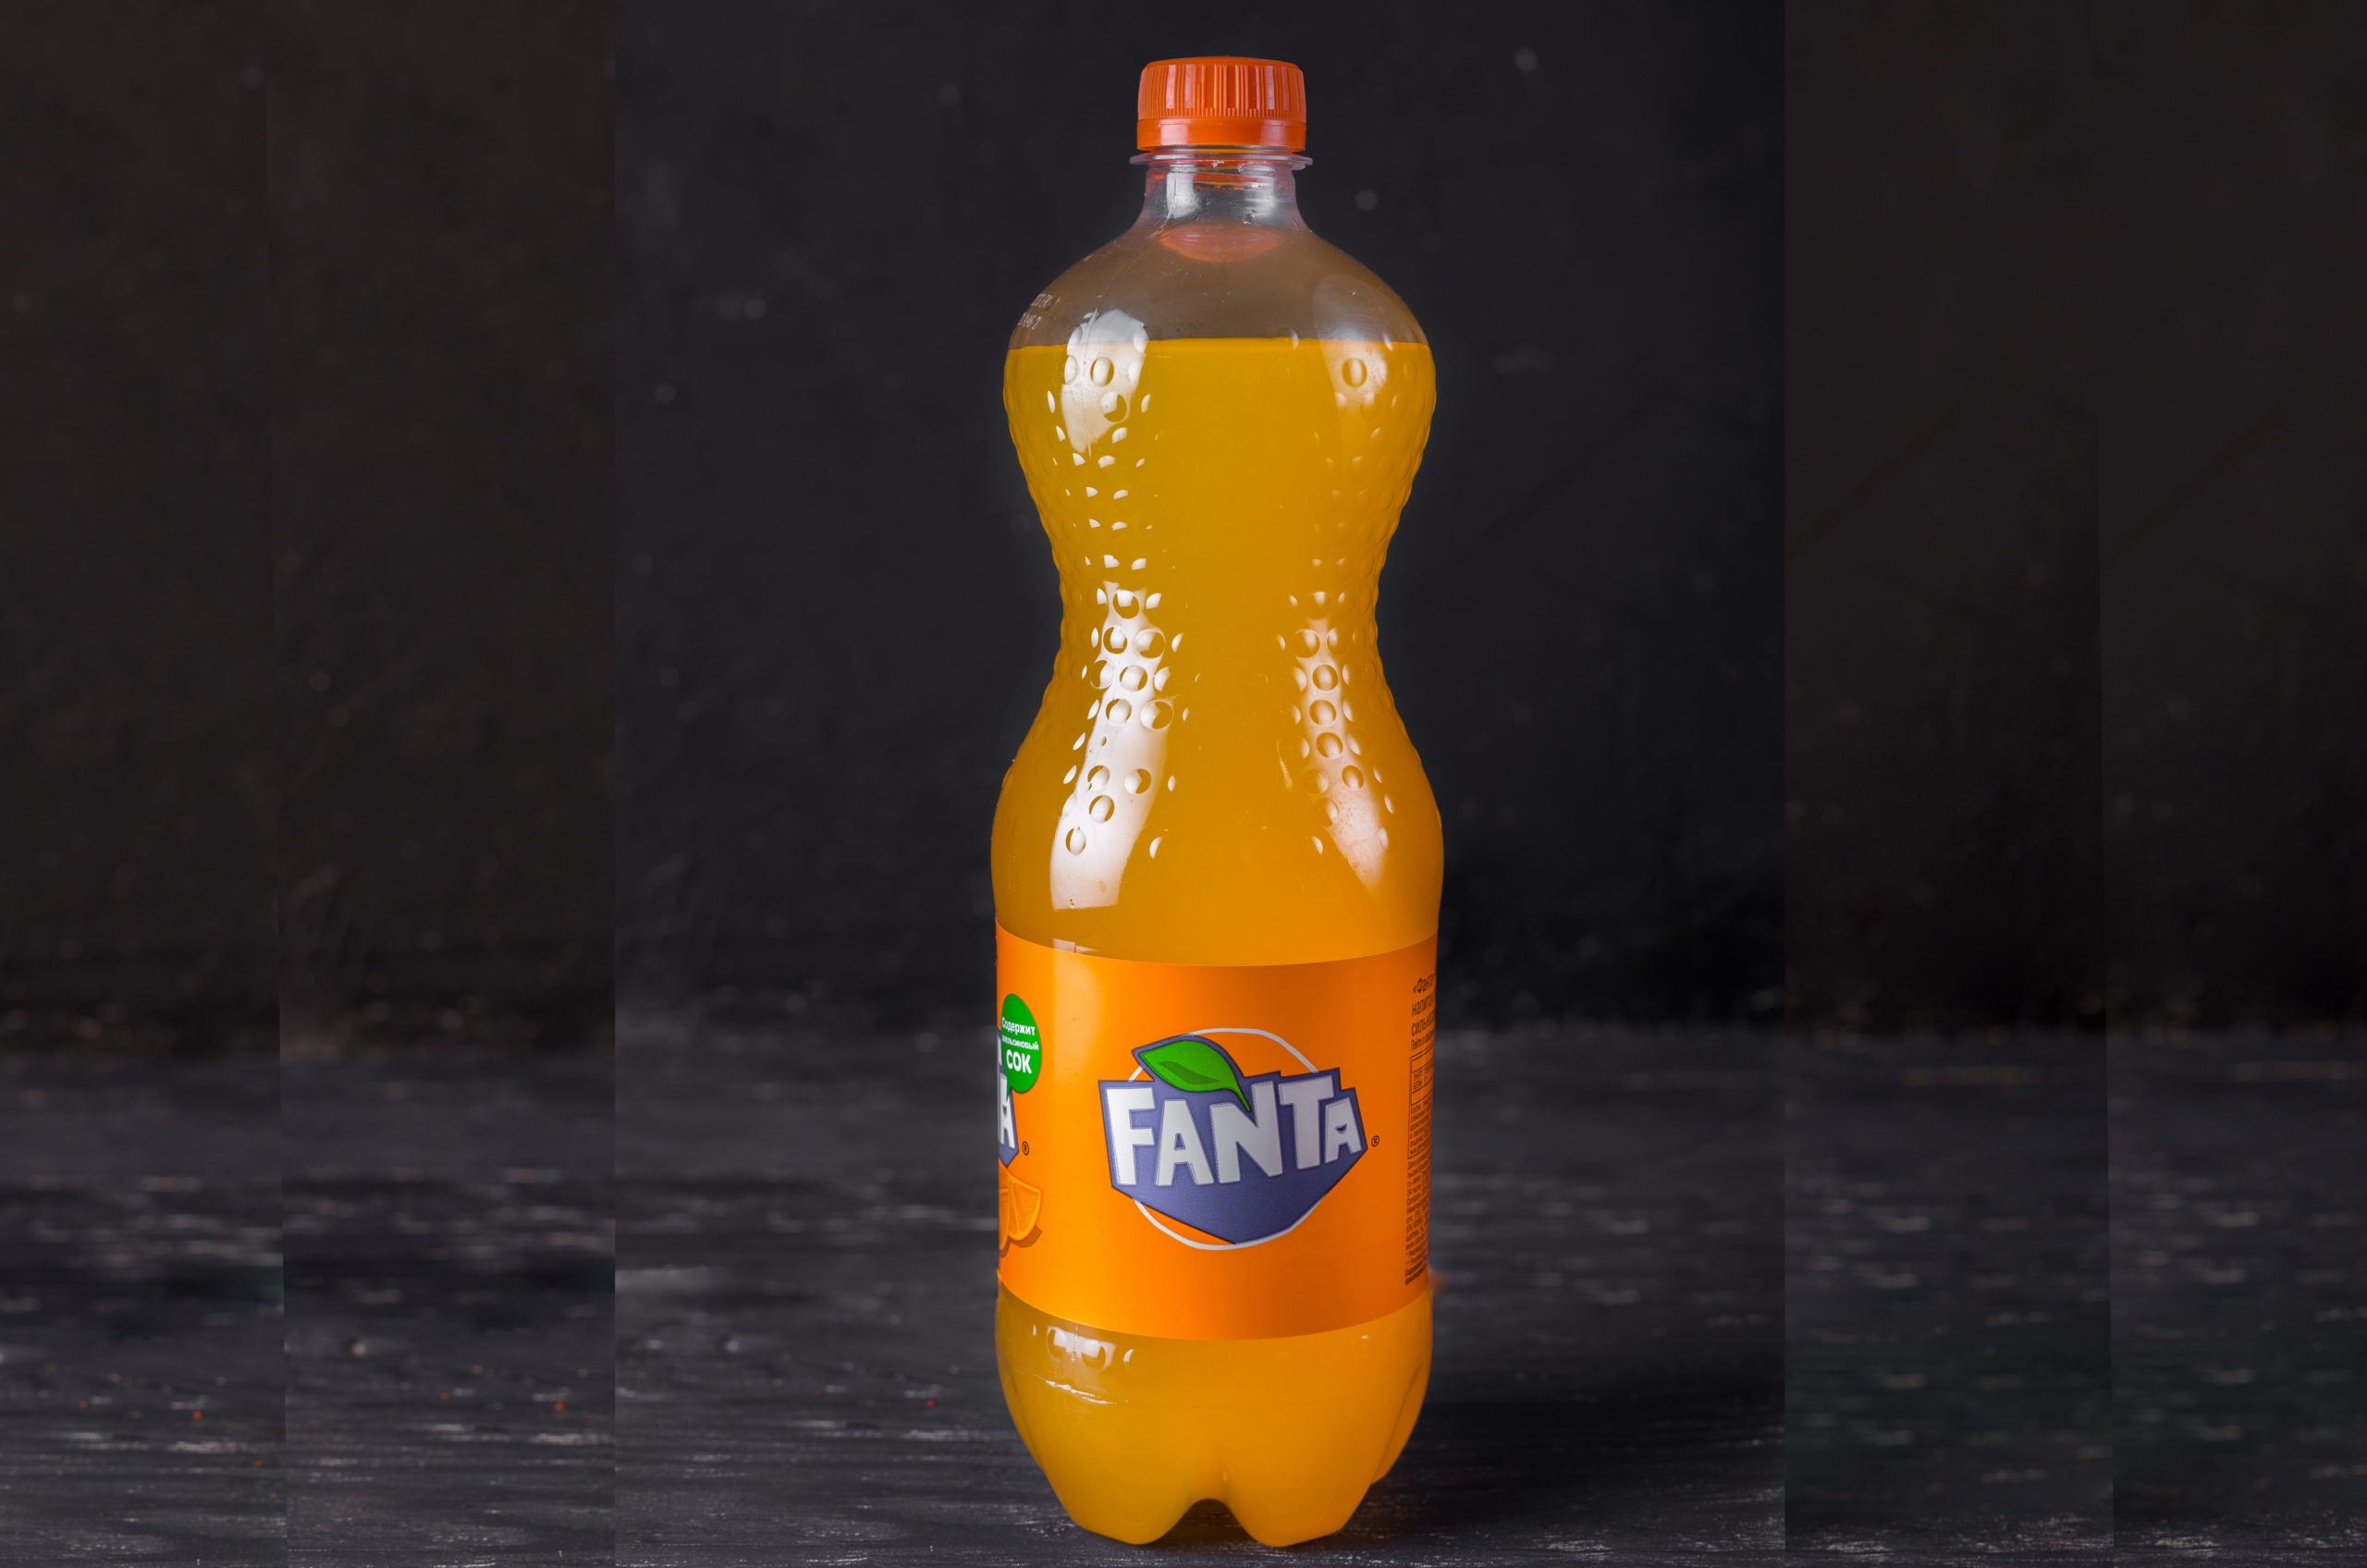 Апельсиновая газированная вода. Fanta апельсин 0.9л ПЭТ. Fanta апельсин 1 литр. Напиток Фанта апельсин 2л. Fanta апельсин 0.9 л (900 мл).